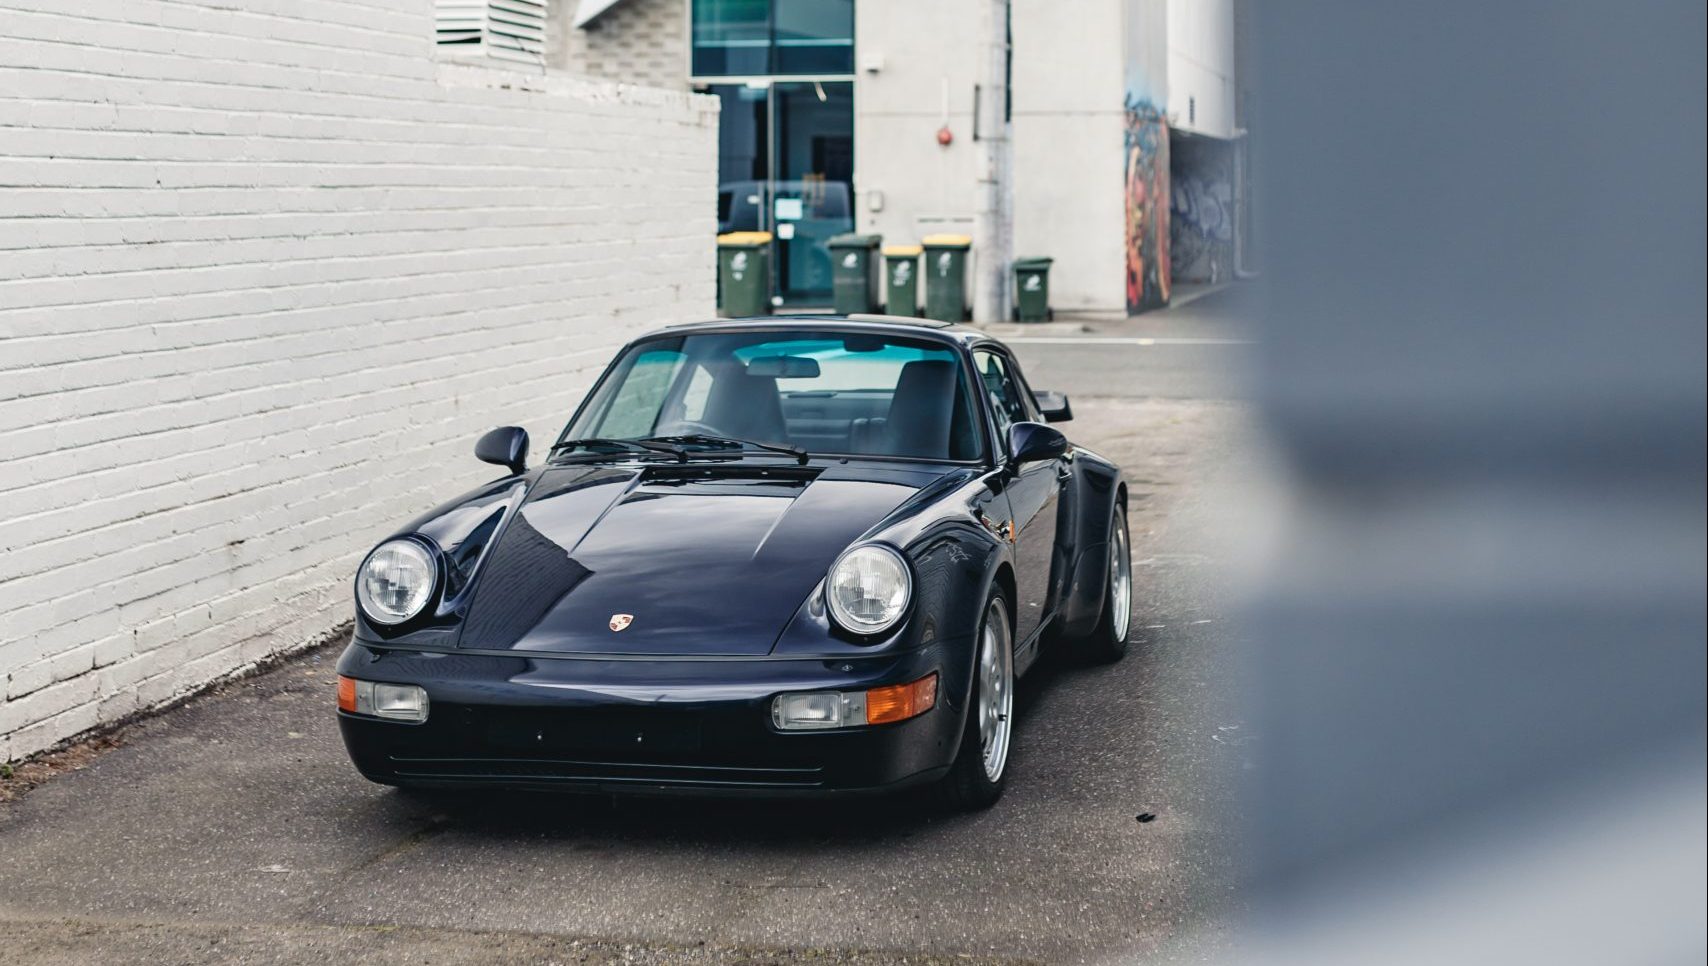 The $1 Million Porsche Restoration